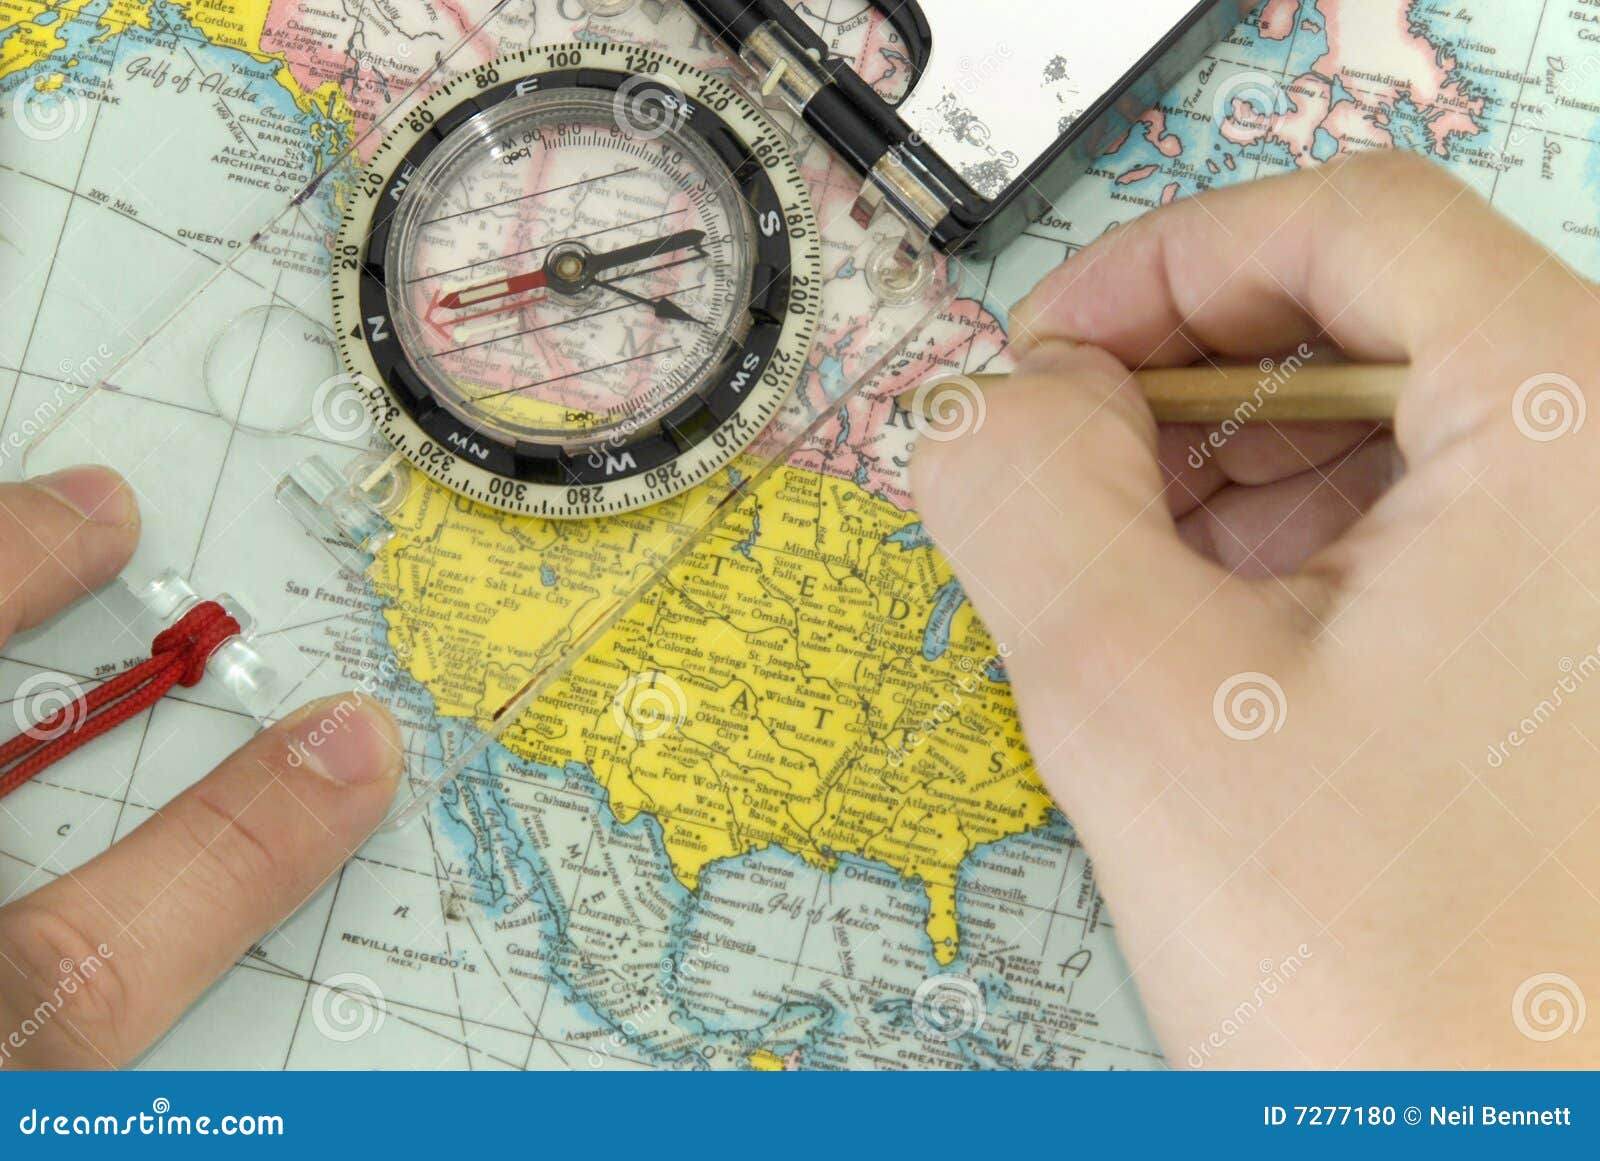 Map Compass Navigation 7277180 